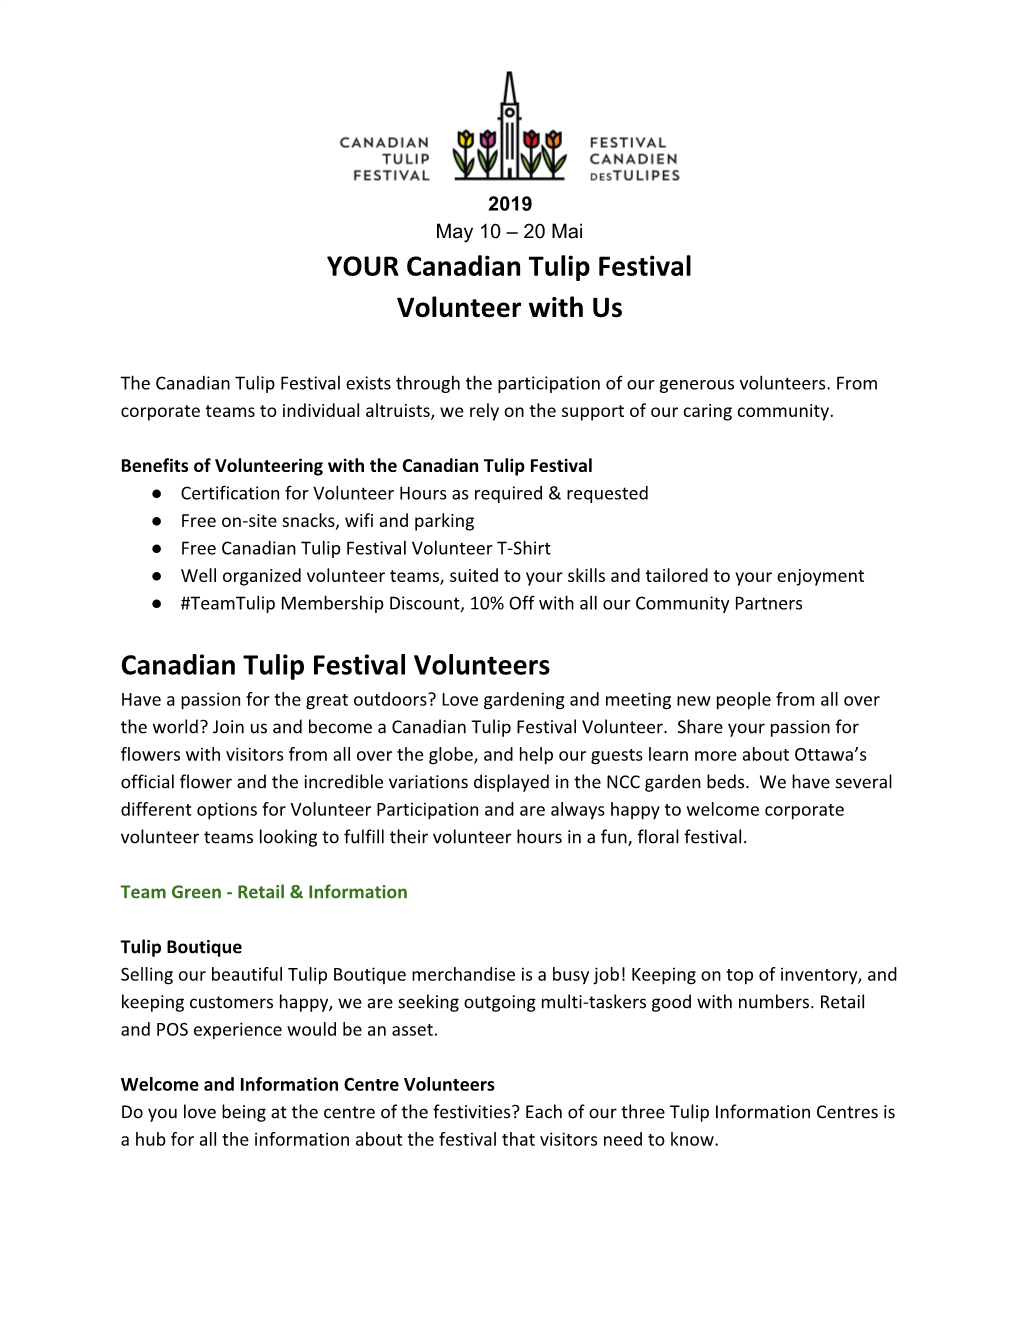 Canadian Tulip Festival Volunteers